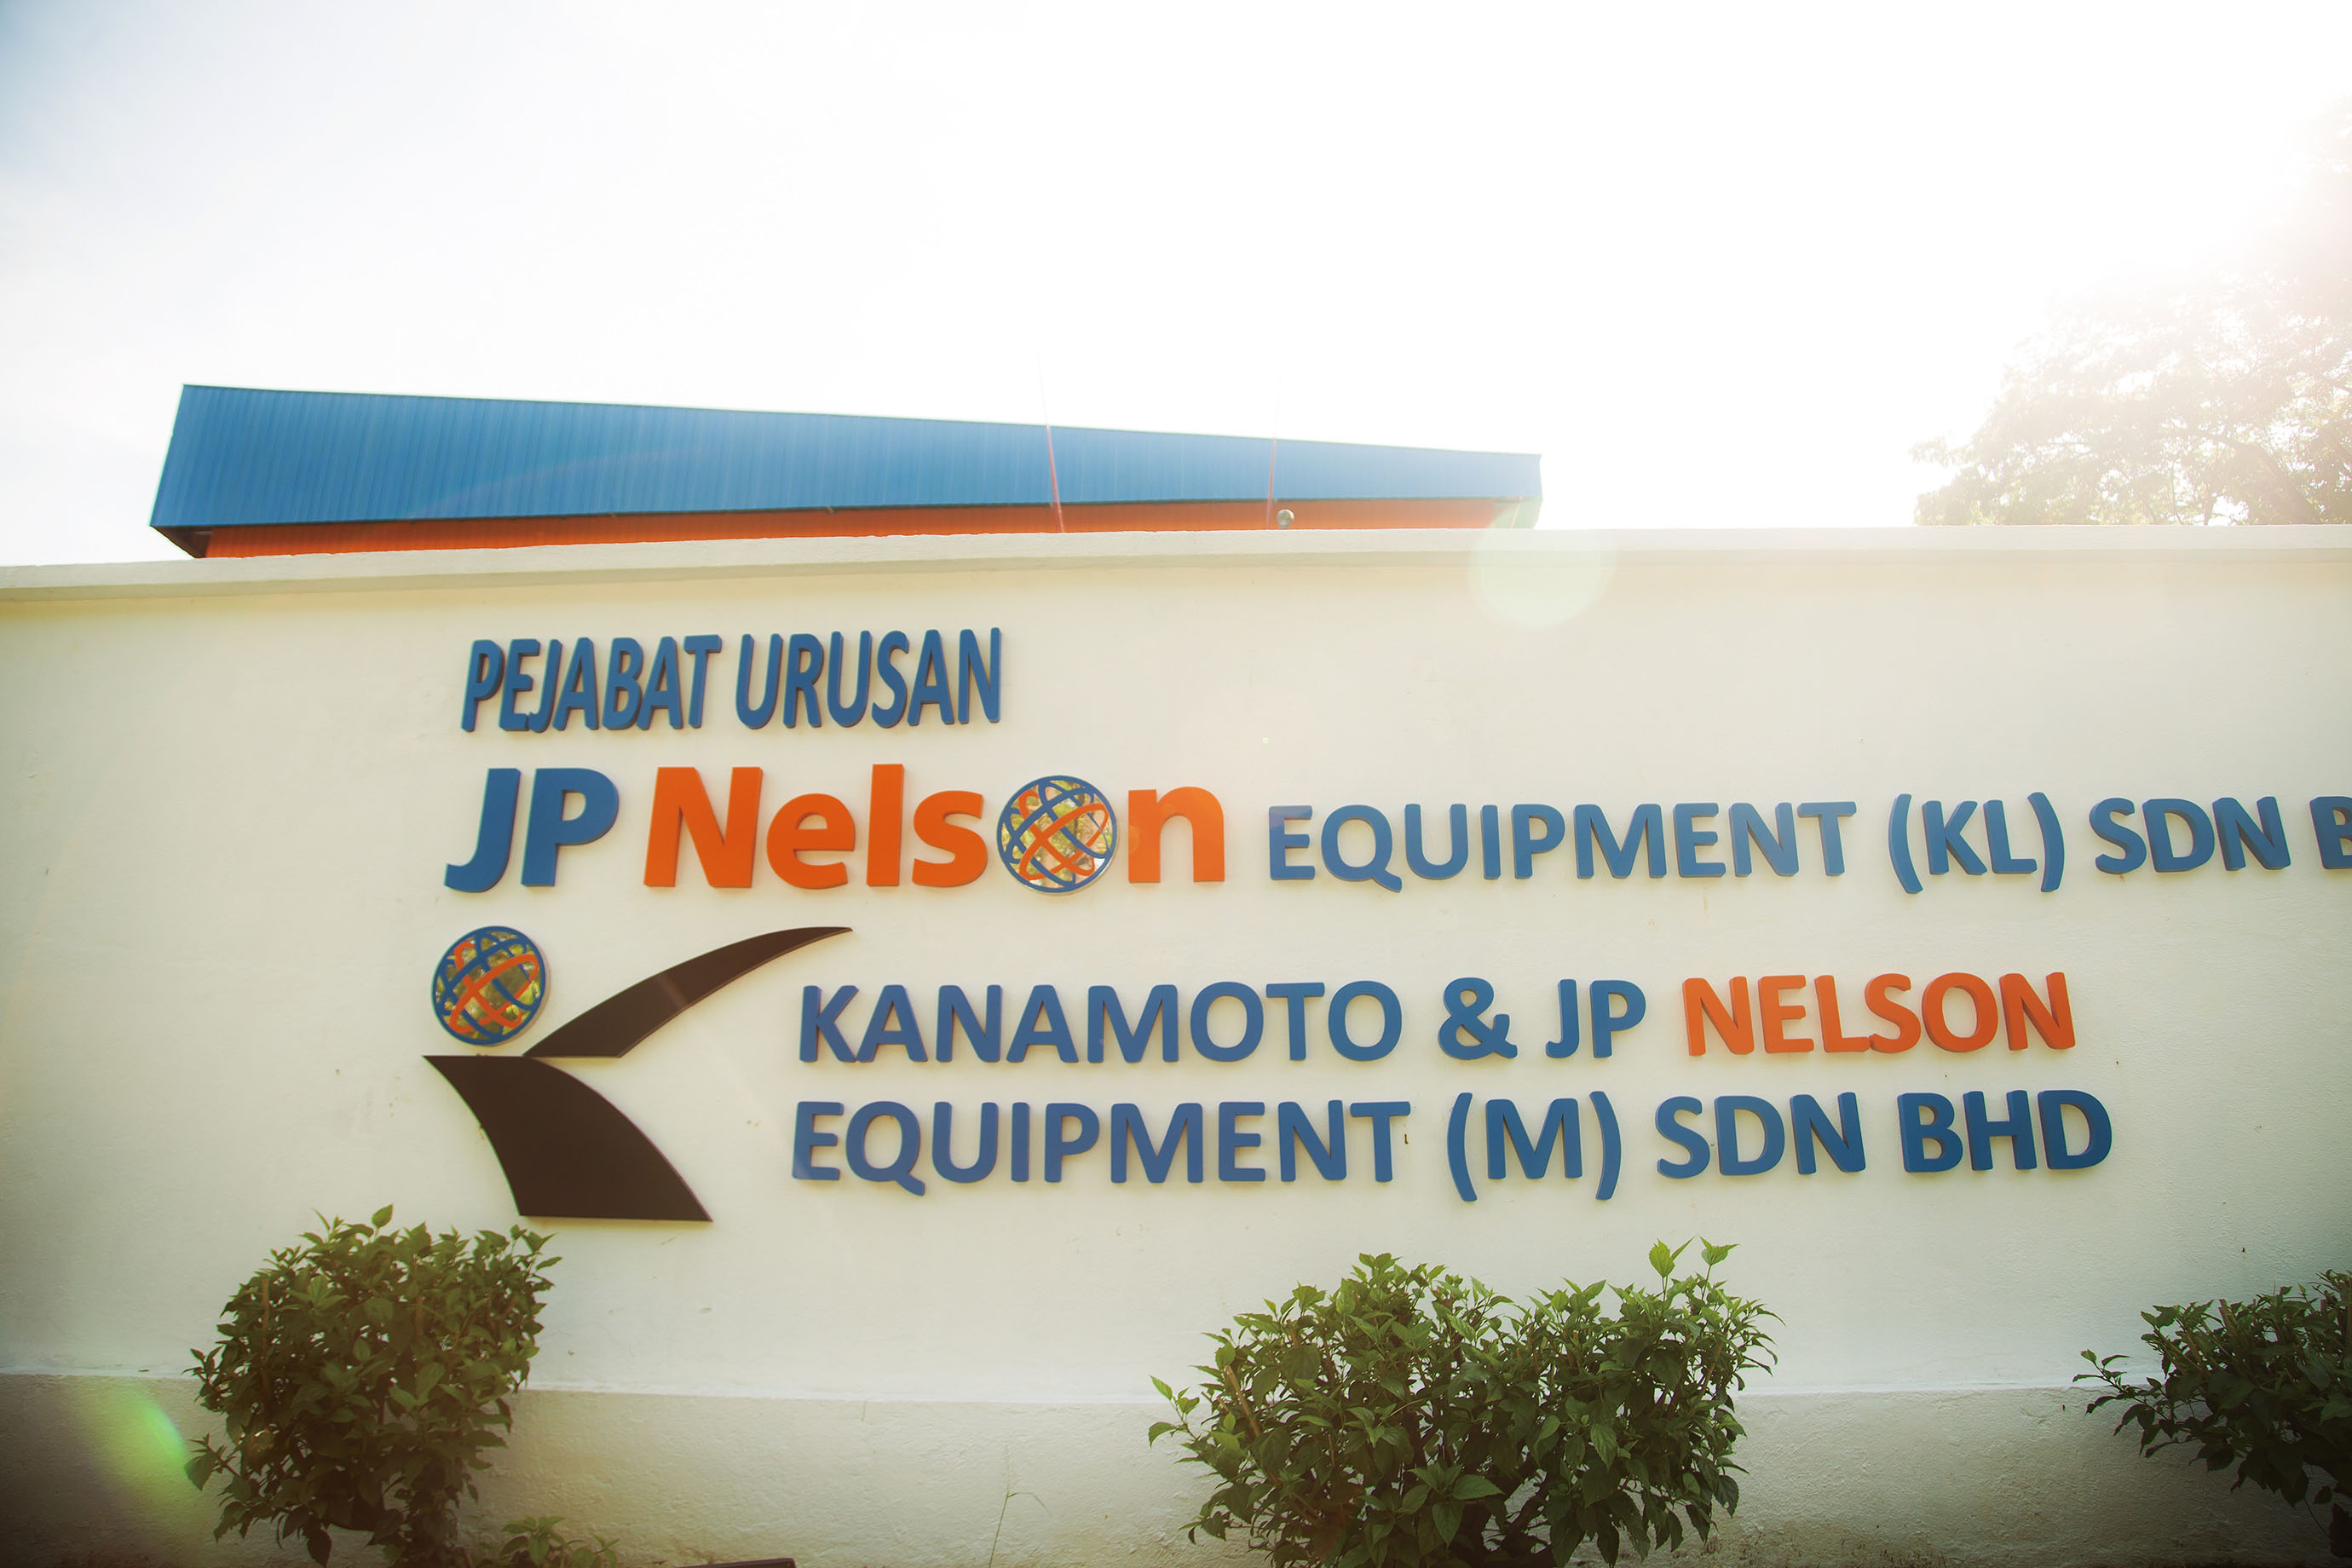 KANAMOTO & JP NELSON EQUIPMENT (M) SDN. BHD.